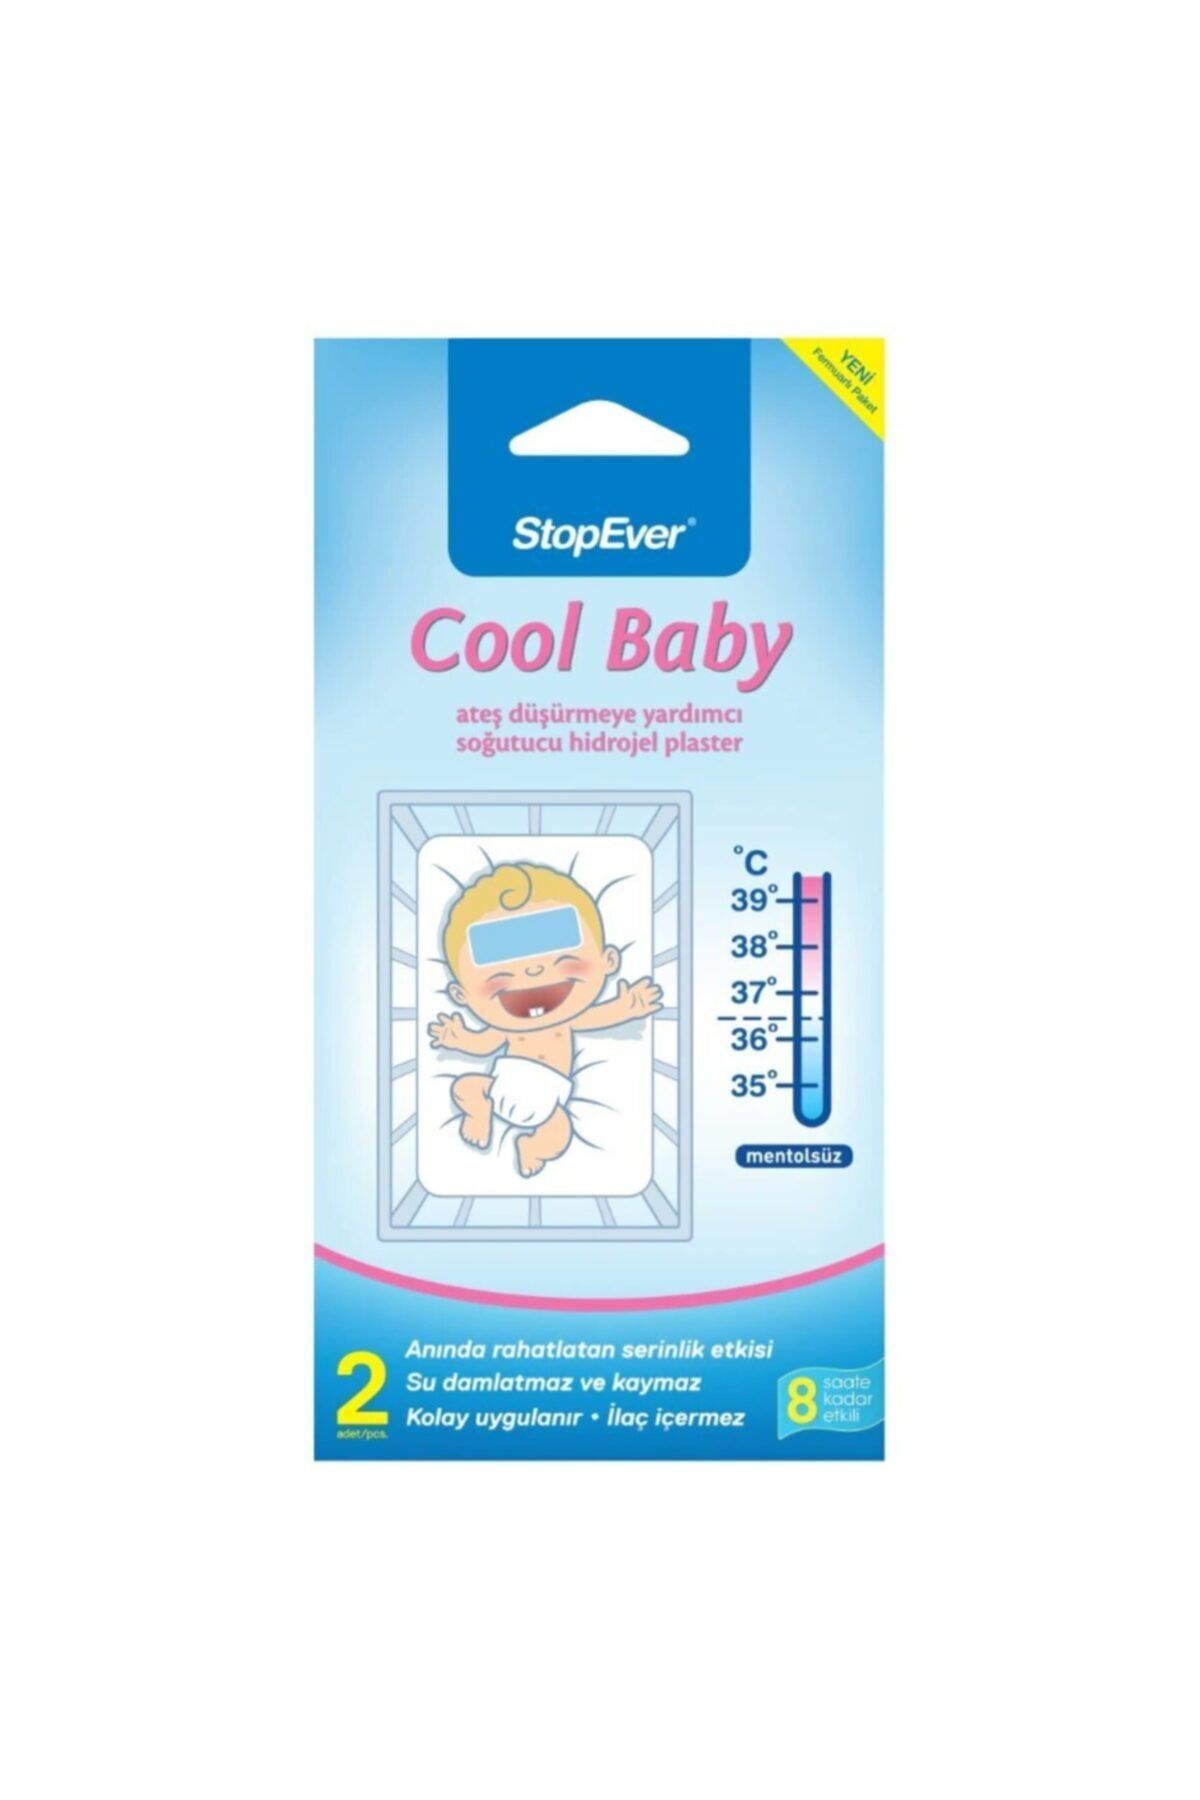 StopEver Cool Baby Ateş Düşürmeye Yardımcı Soğutucu Hidrojel Plaster